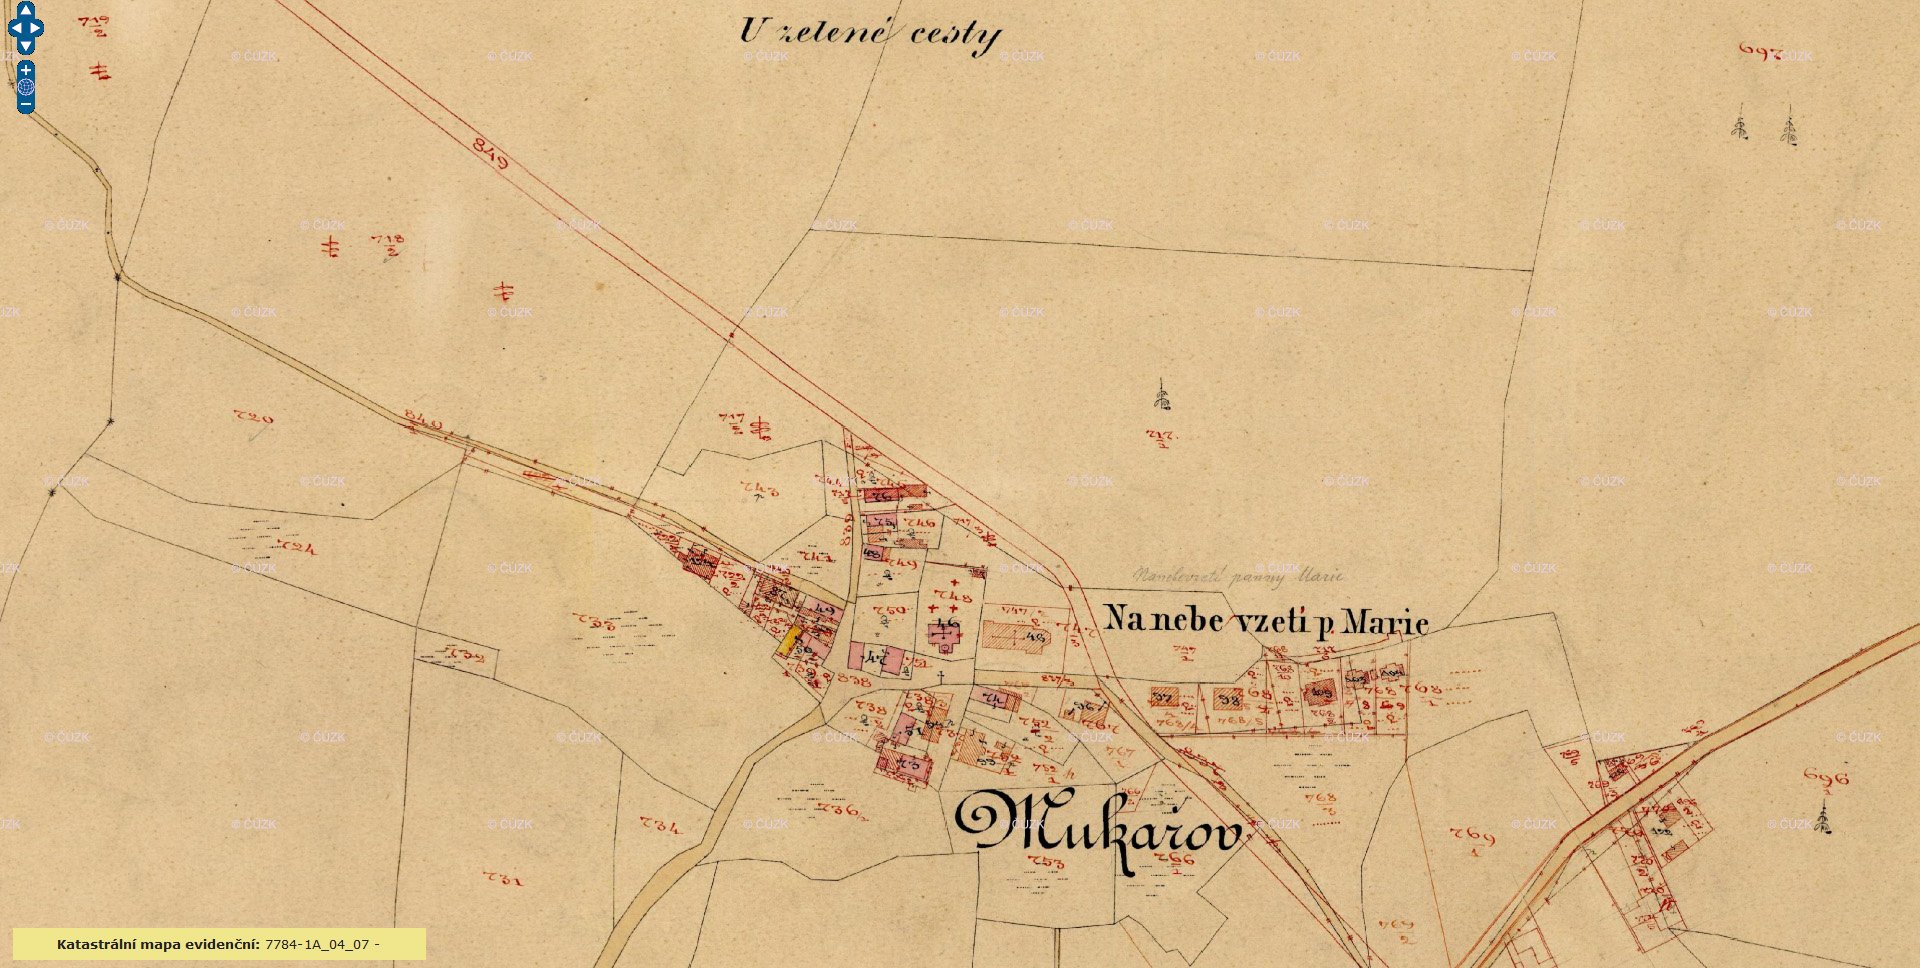 Mukařov katastrální mapy evidenční Čech 1886 - 1:2880